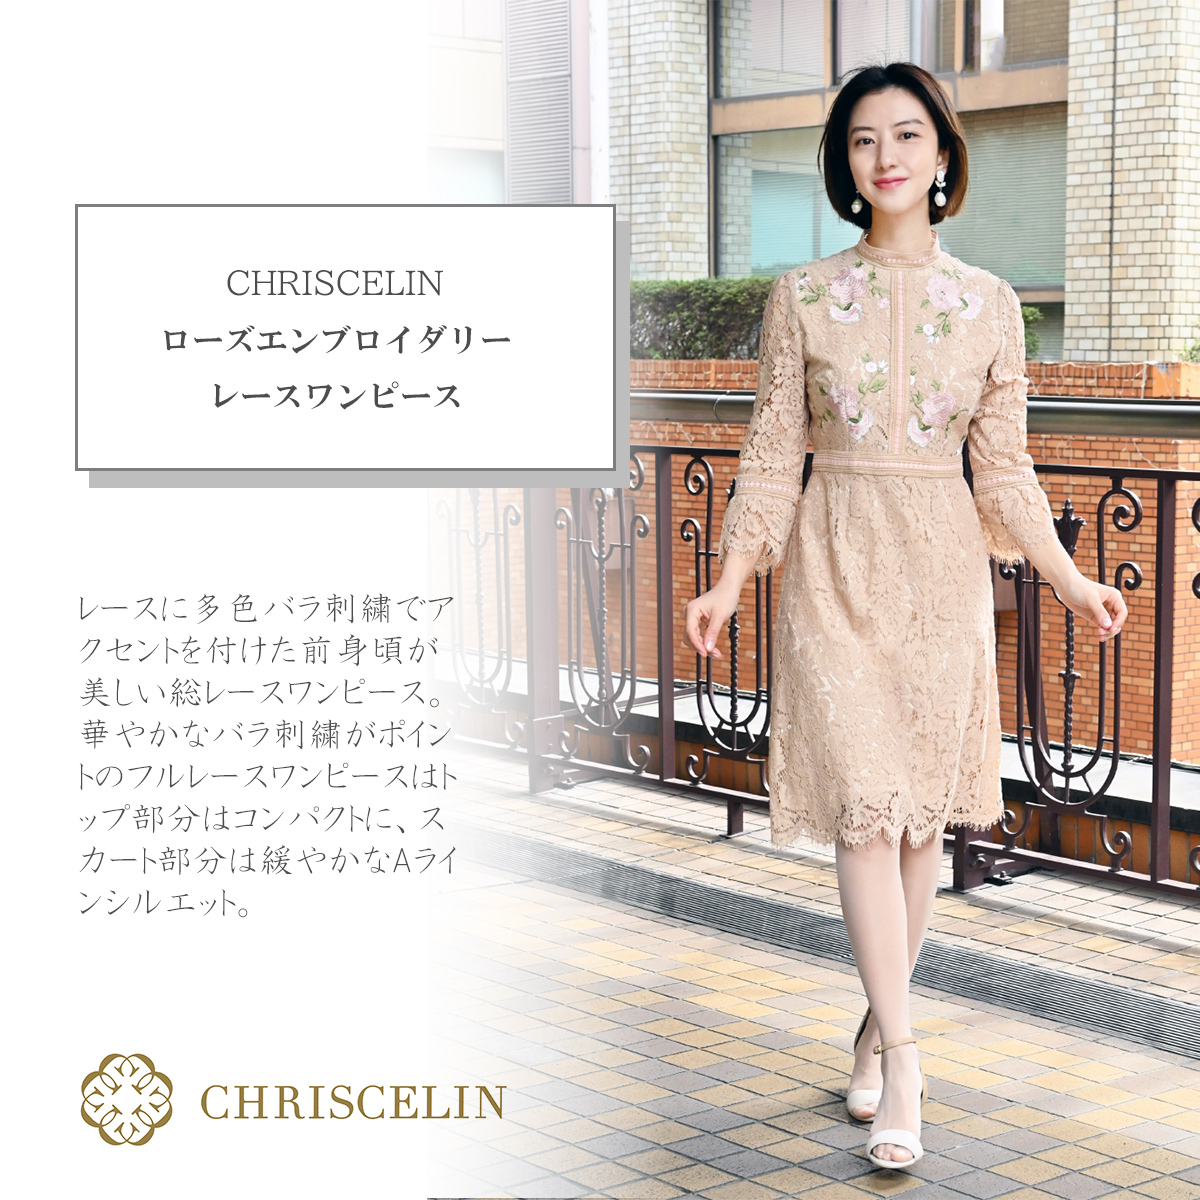 海外限定 クリスセリーン CHRISCELIN レースワンピース asakusa.sub.jp